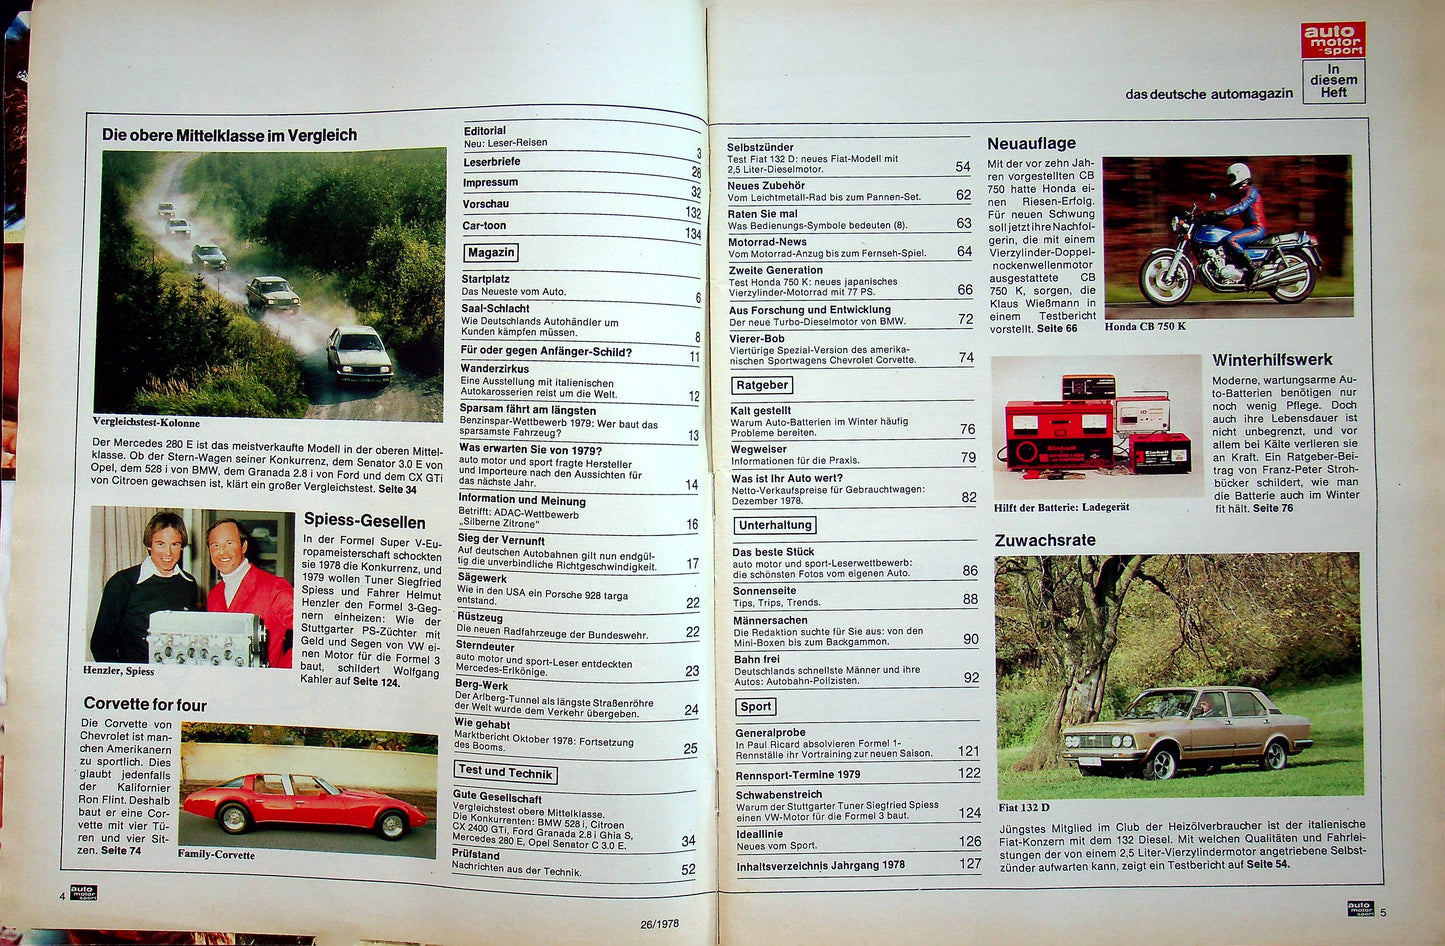 Auto Motor und Sport 26/1978